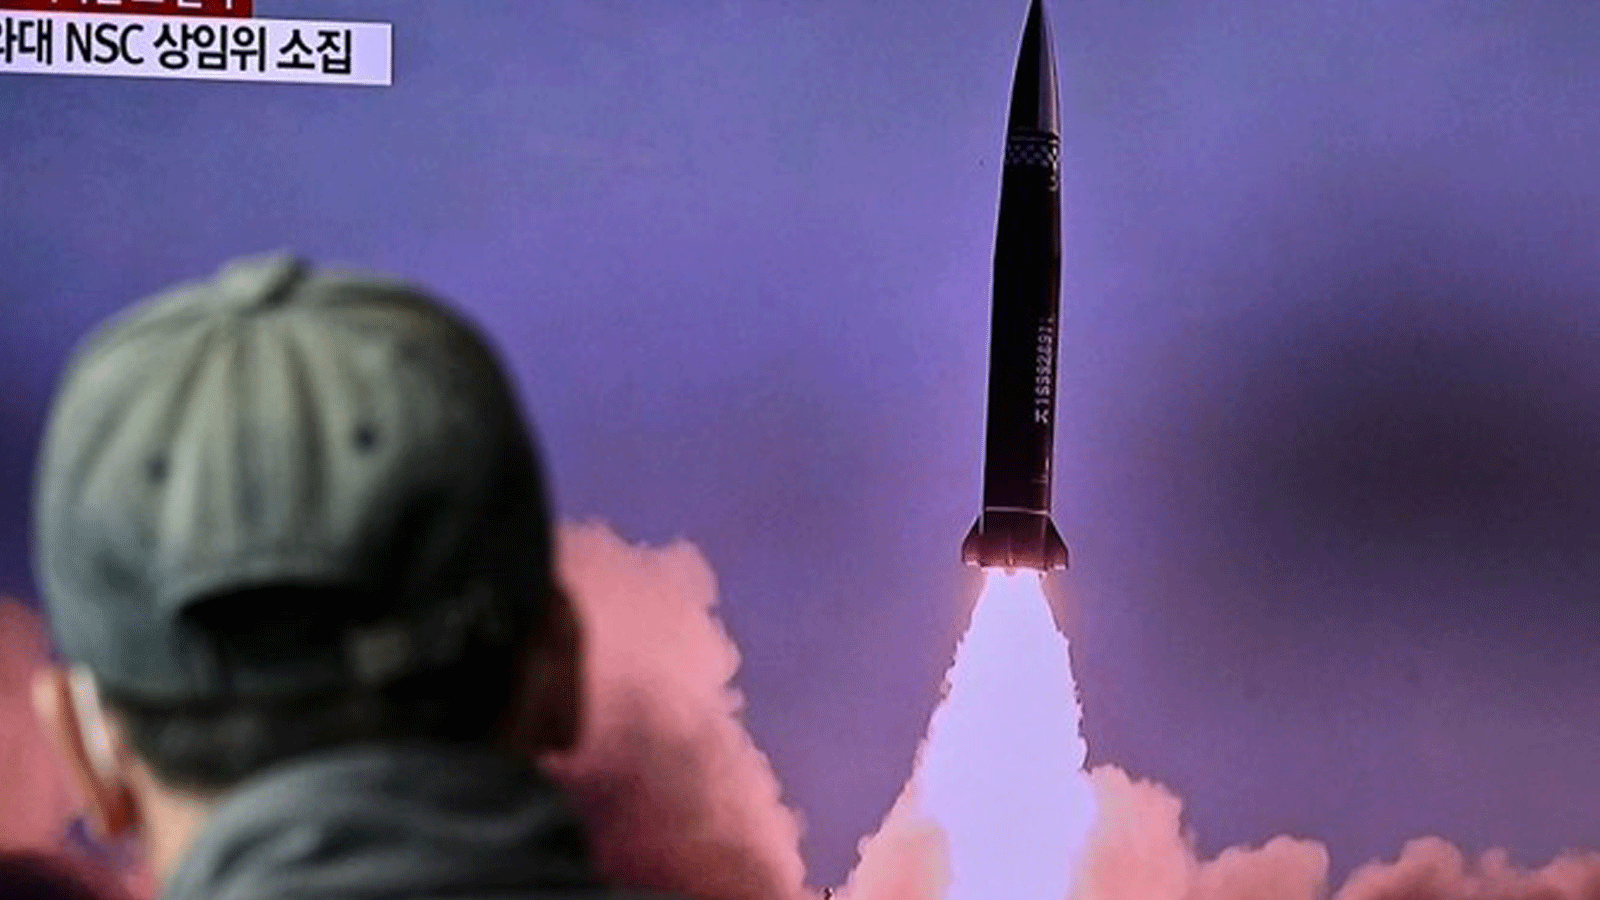 كوريا الشمالية أطلقت مؤخرًا سلسلة من تجارب الأسلحة، بما في ذلك صاروخ كروز بعيد المدى، وسلاح يُطلق عبر القطار وما قالت إنه رأس حربي تفوق سرعته سرعة الصوت.